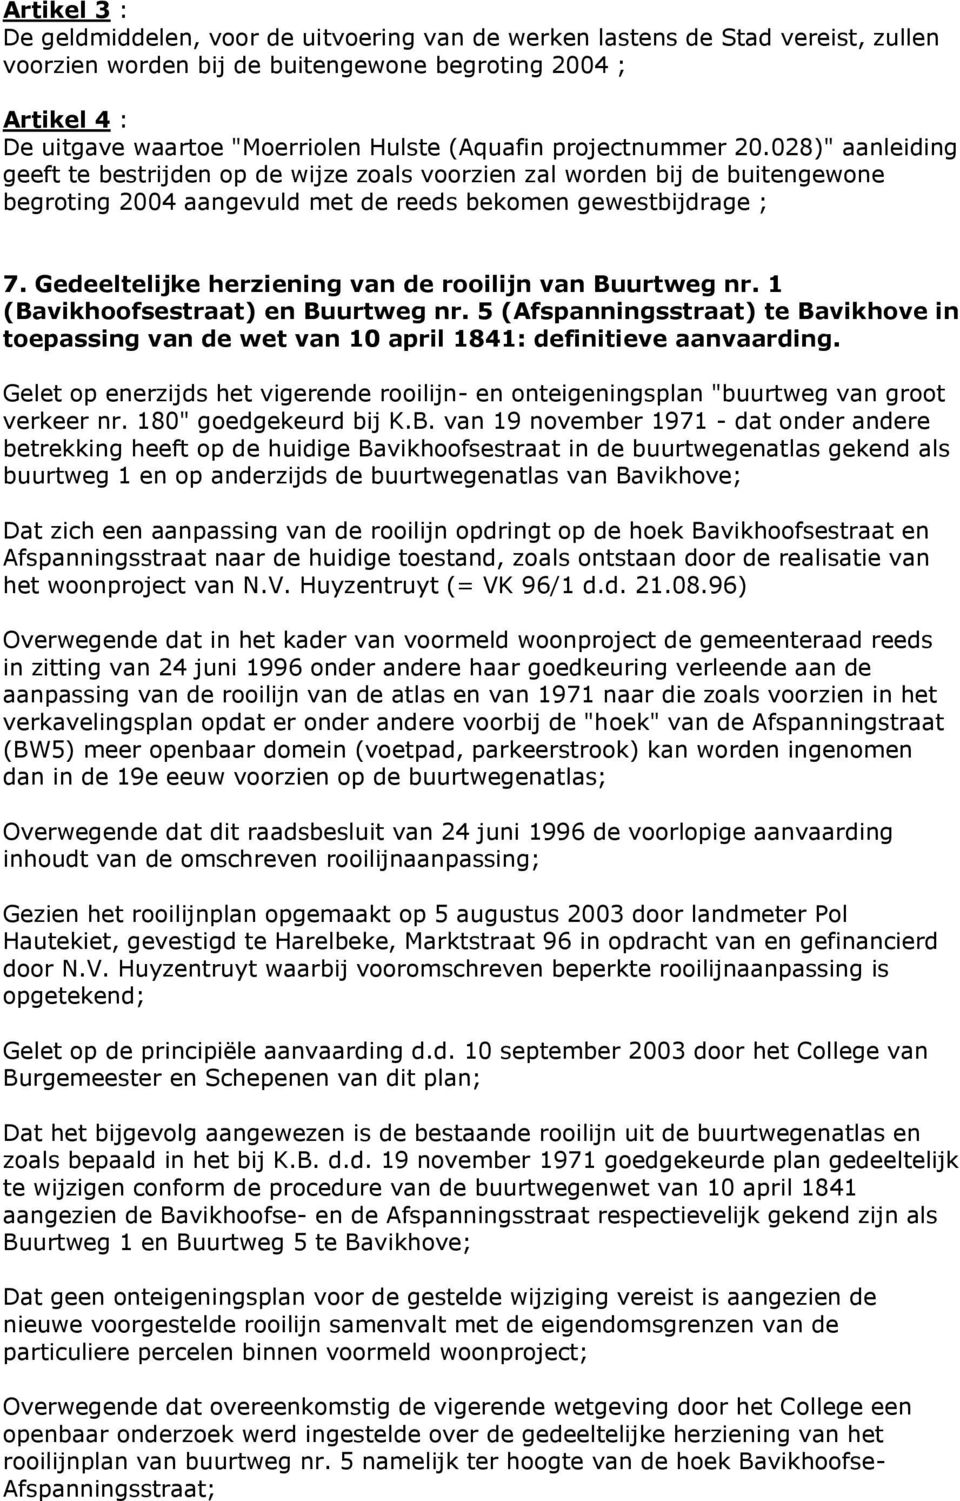 Gedeeltelijke herziening van de rooilijn van Buurtweg nr. 1 (Bavikhoofsestraat) en Buurtweg nr. 5 (Afspanningsstraat) te Bavikhove in toepassing van de wet van 10 april 1841: definitieve aanvaarding.